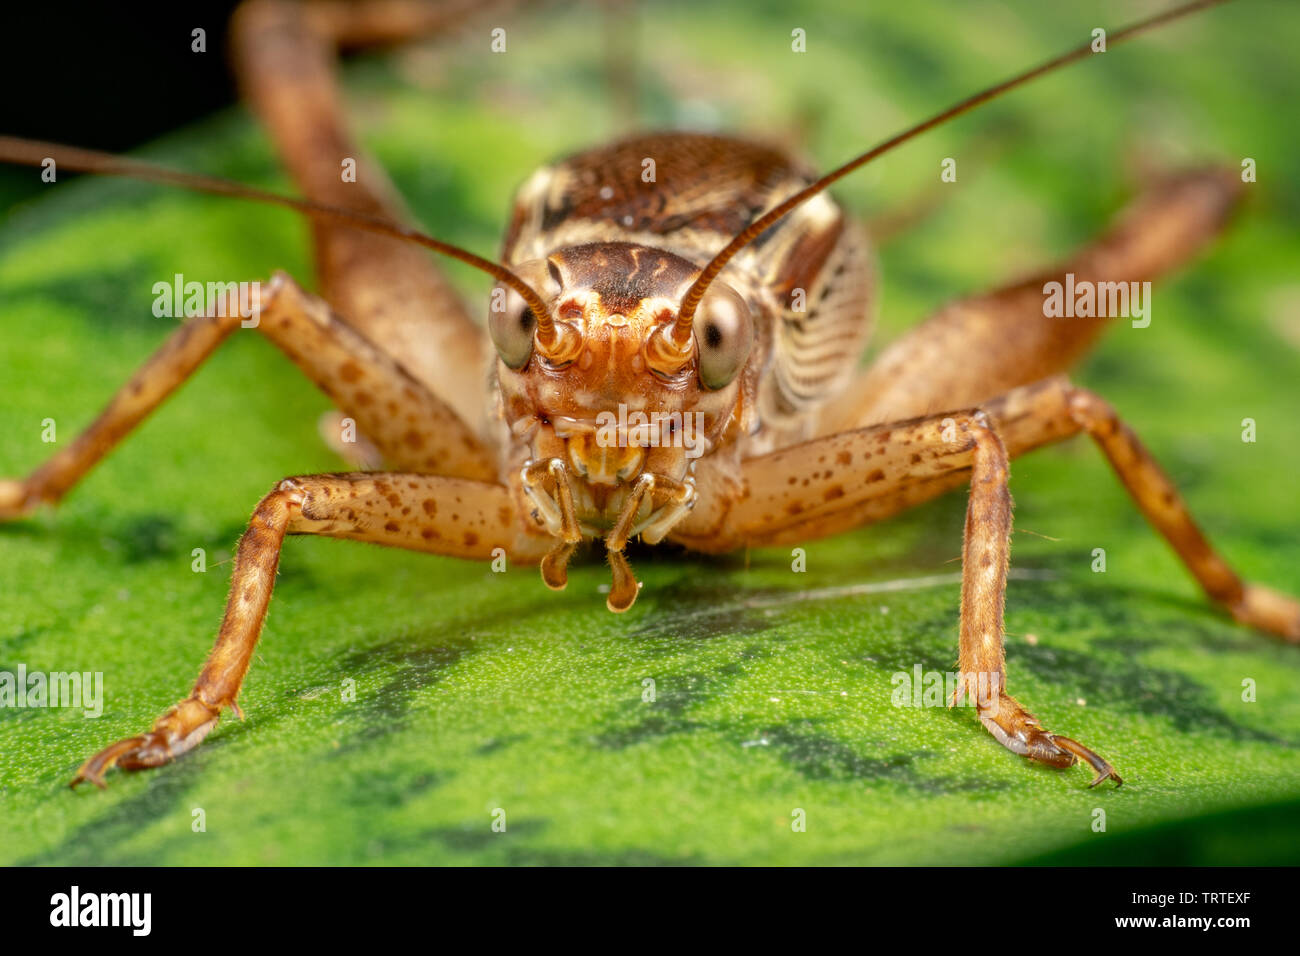 Chiusura del vero cricket adulto, Cardiodactylus novaeguineae, nella foresta pluviale tropicale Foto Stock